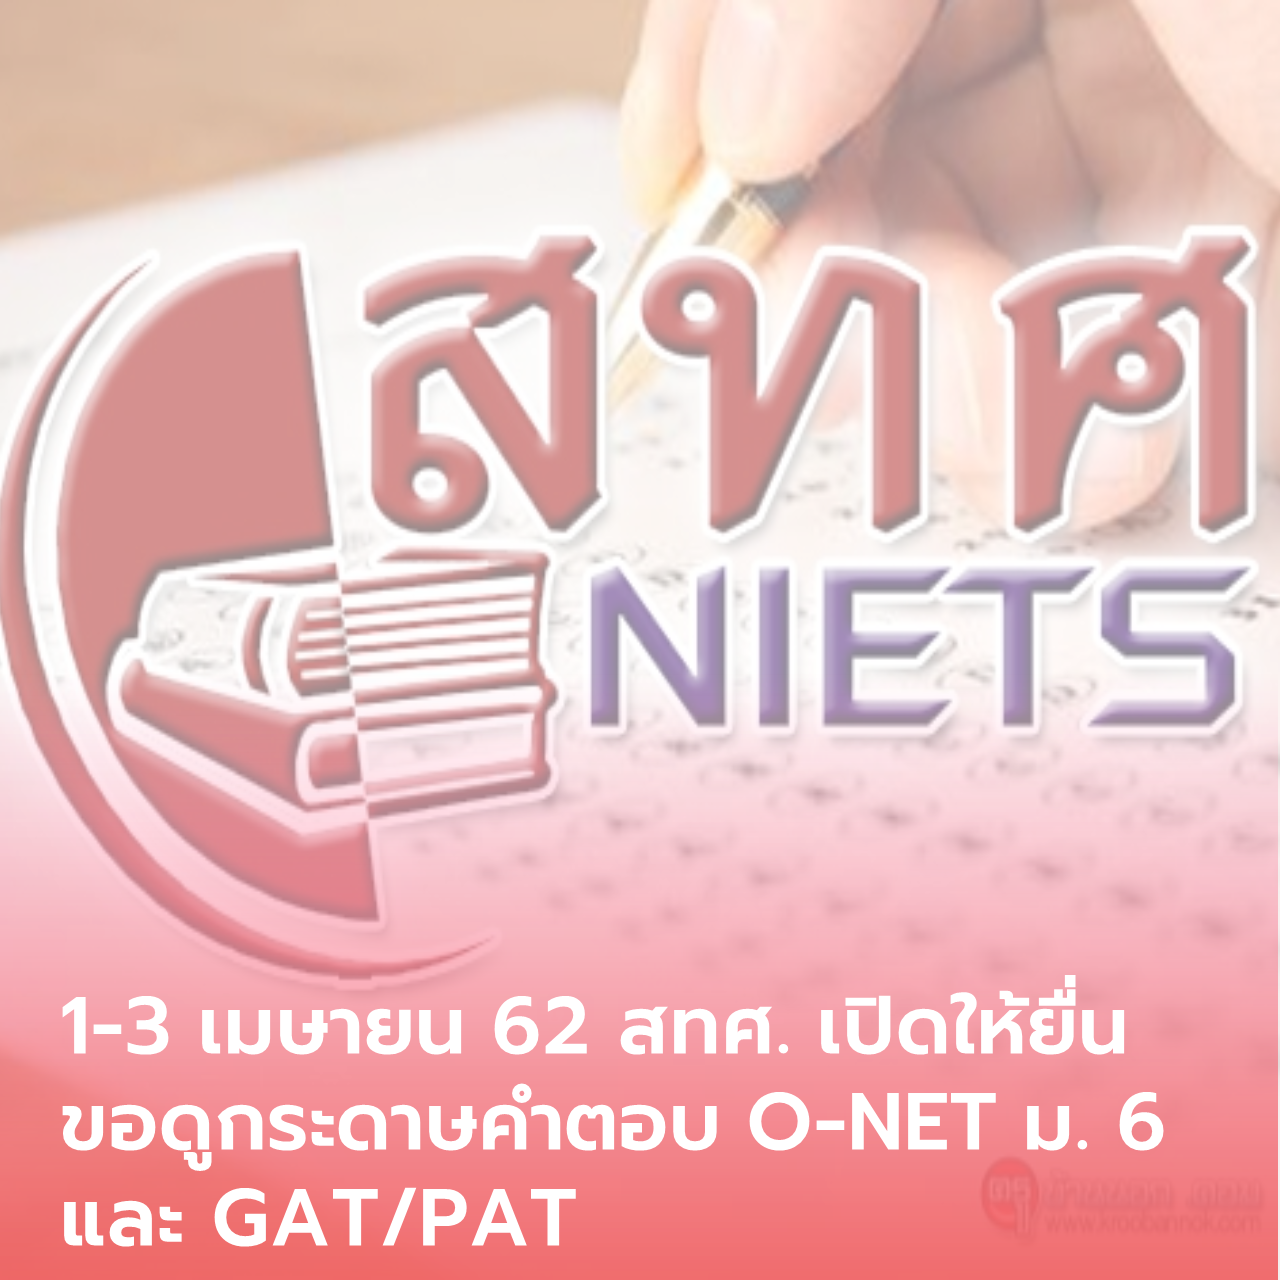  1-3 เมษายน 62 สทศ.เปิดให้ยื่นขอดูกระดาษคำตอบ O-NET ม. 6 และ GAT/PAT